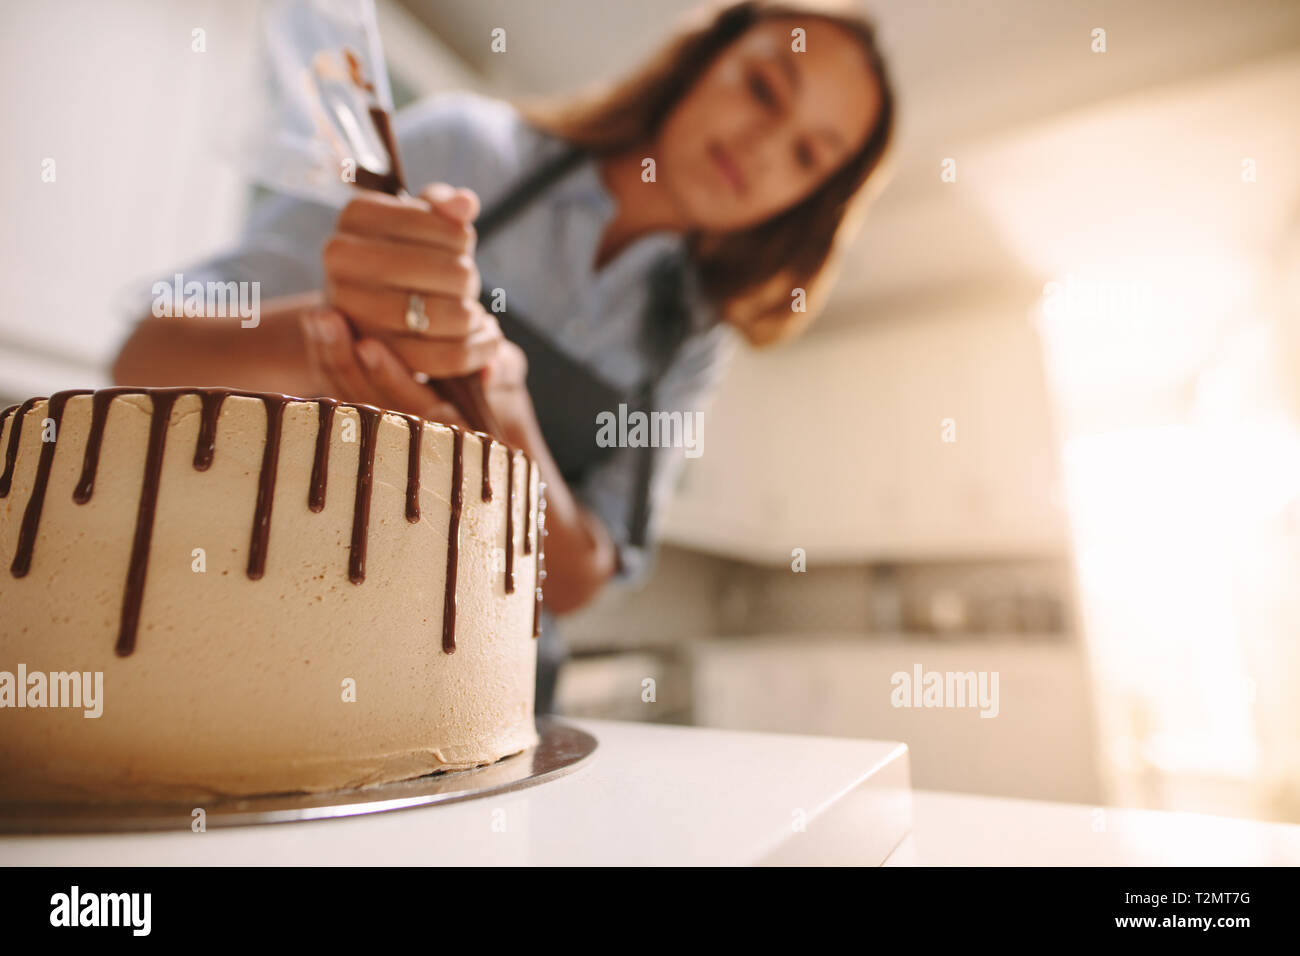 Gâteau sur un support en bois avec chef decorating en cuisine. Frais de décoration Baker délicieux gâteau fait maison avec du chocolat liquide sur la table. Banque D'Images